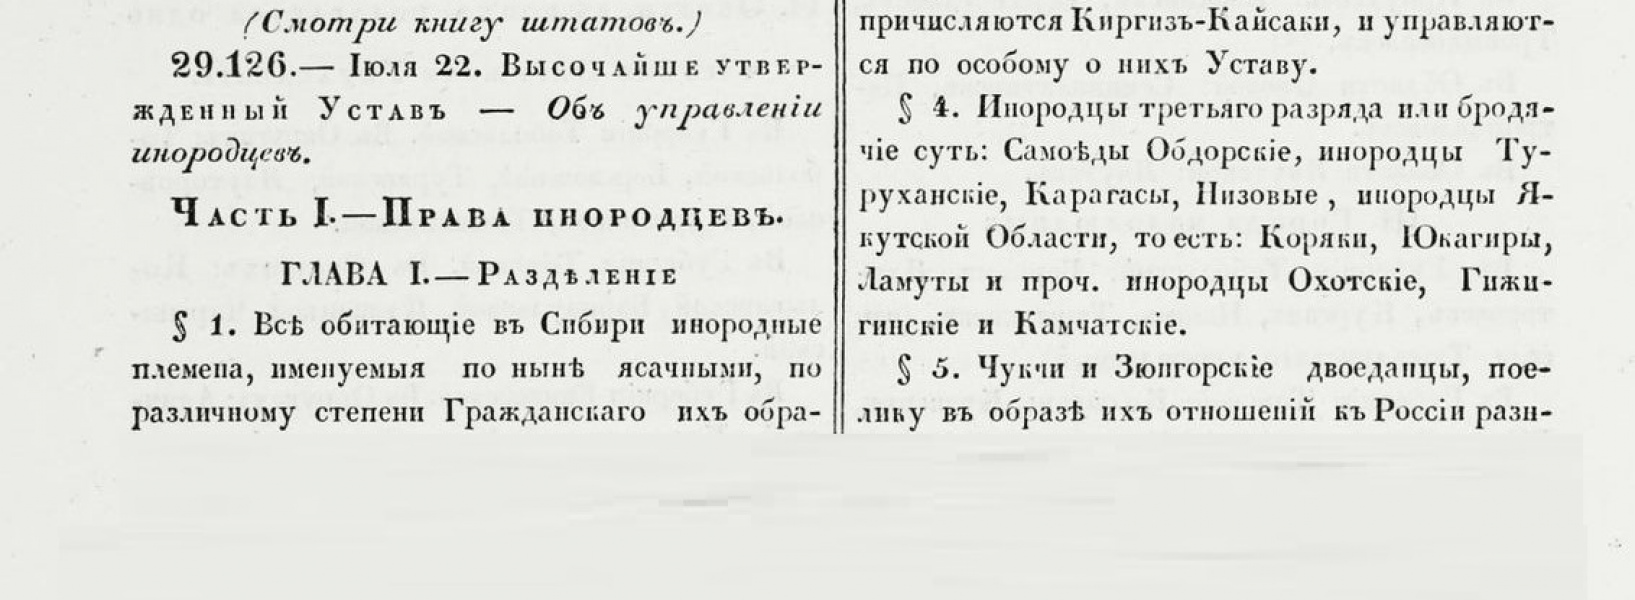 22 июля 1822 г.	200 лет со дня утверждения «Устава об управлении инородцев» М. М. Сперанского